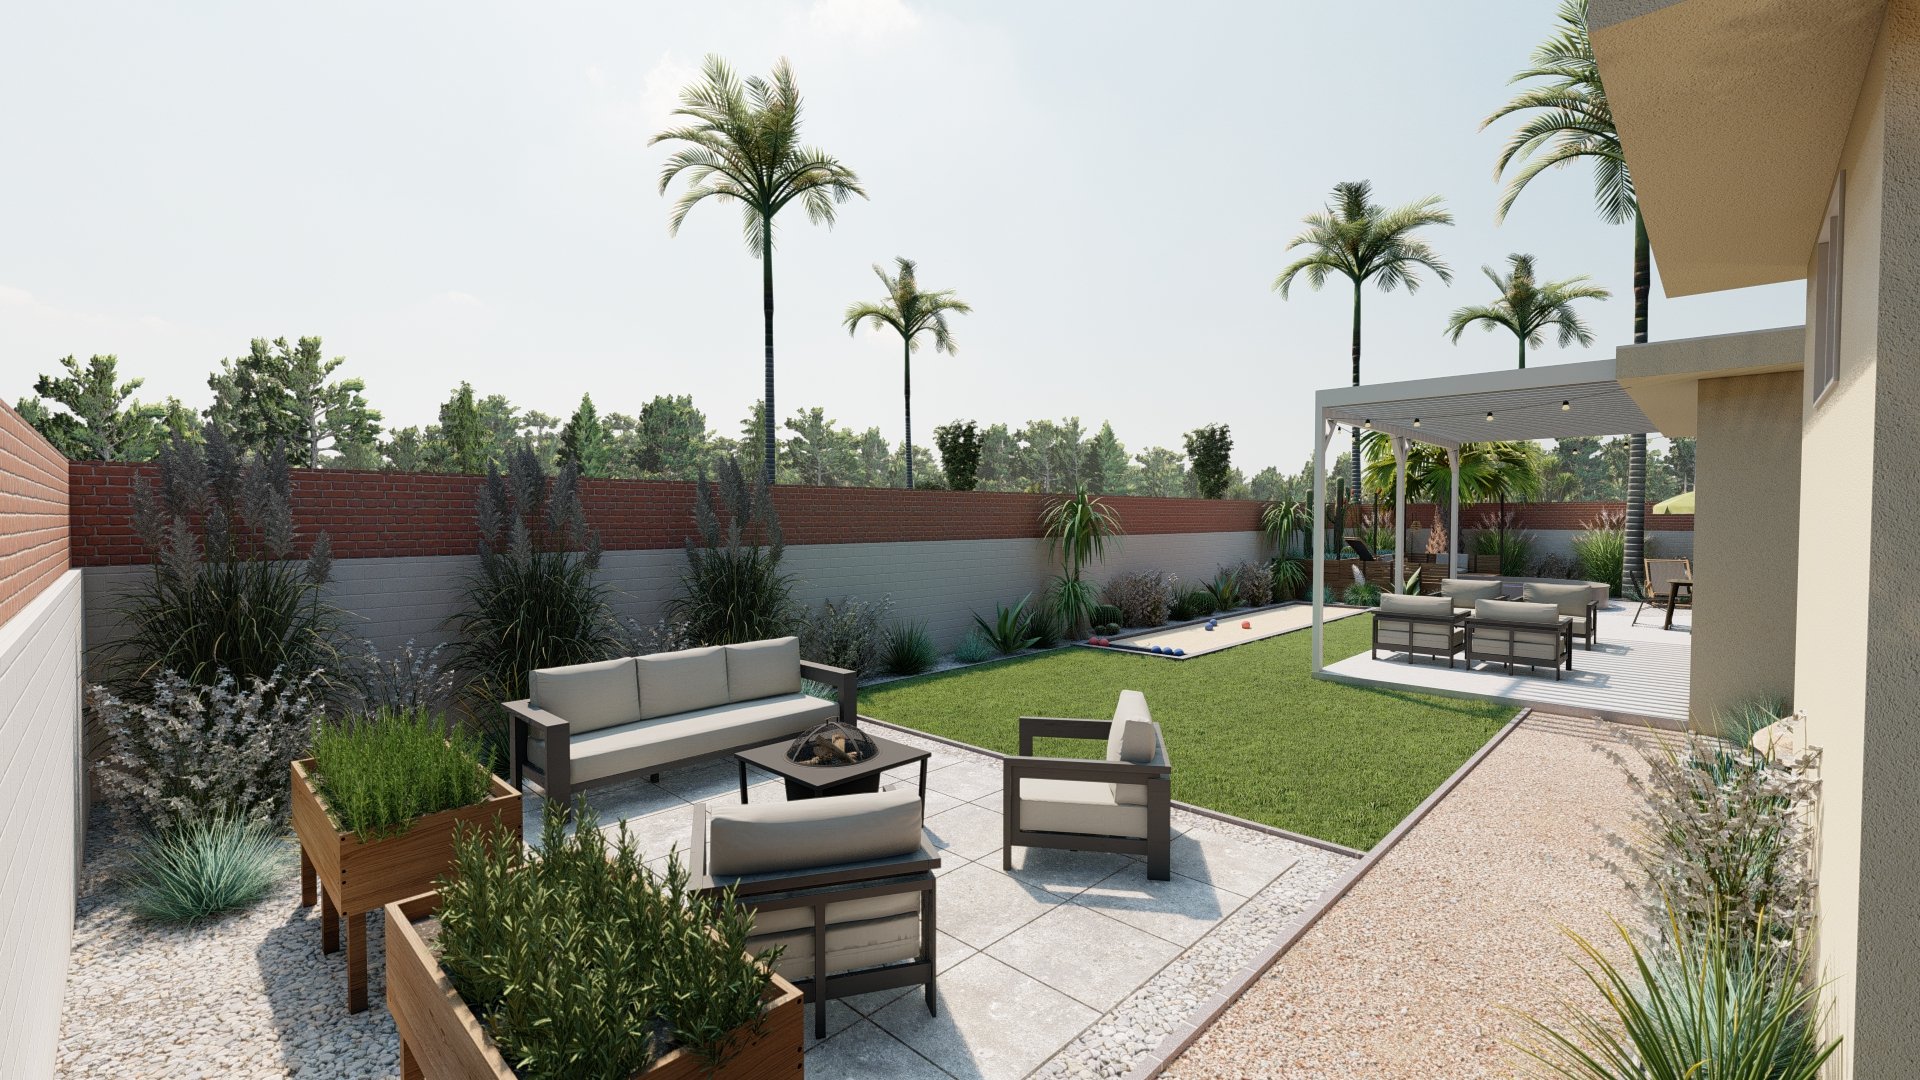 后院的设计与具体的步进和砾石天井沃克沙发和躺椅,提高草花园,火坑。